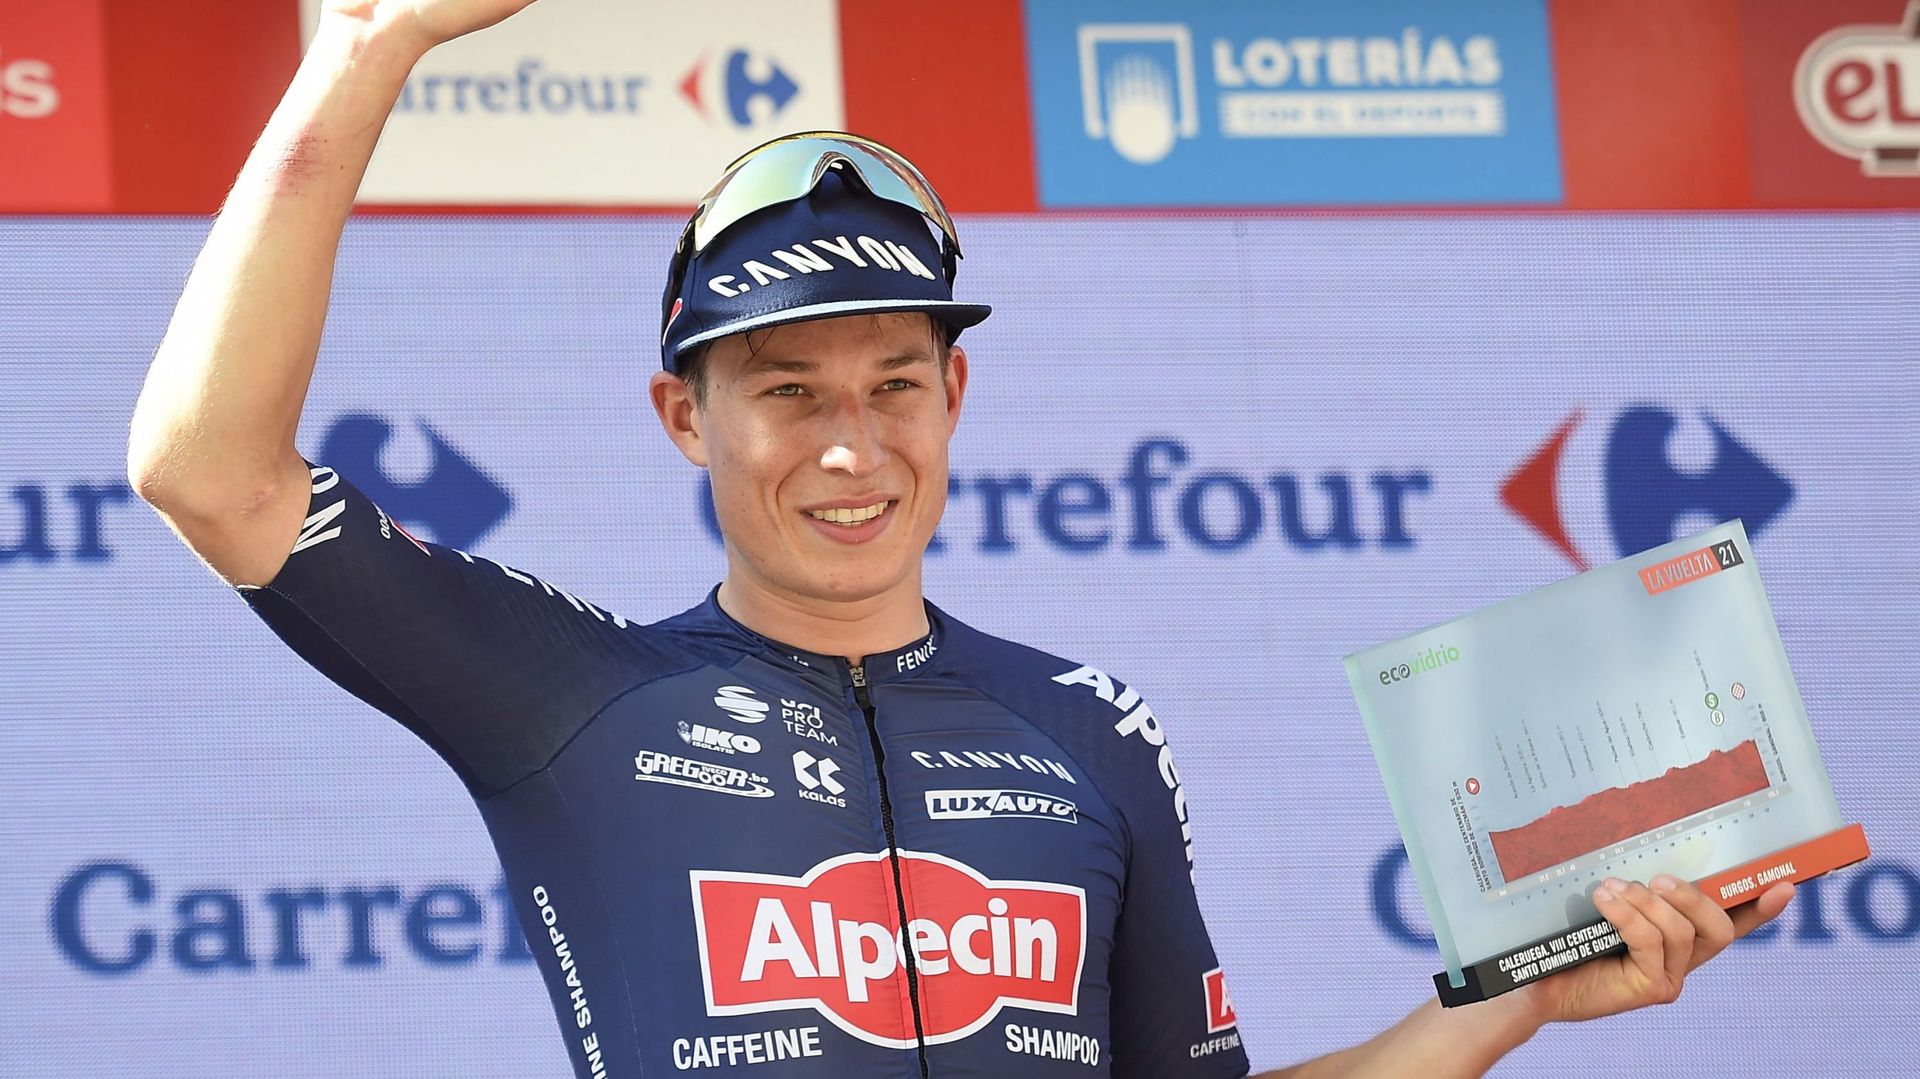 Après autant d’échecs au Tour de France, la victoire est méritée pour le sprinteur belge.